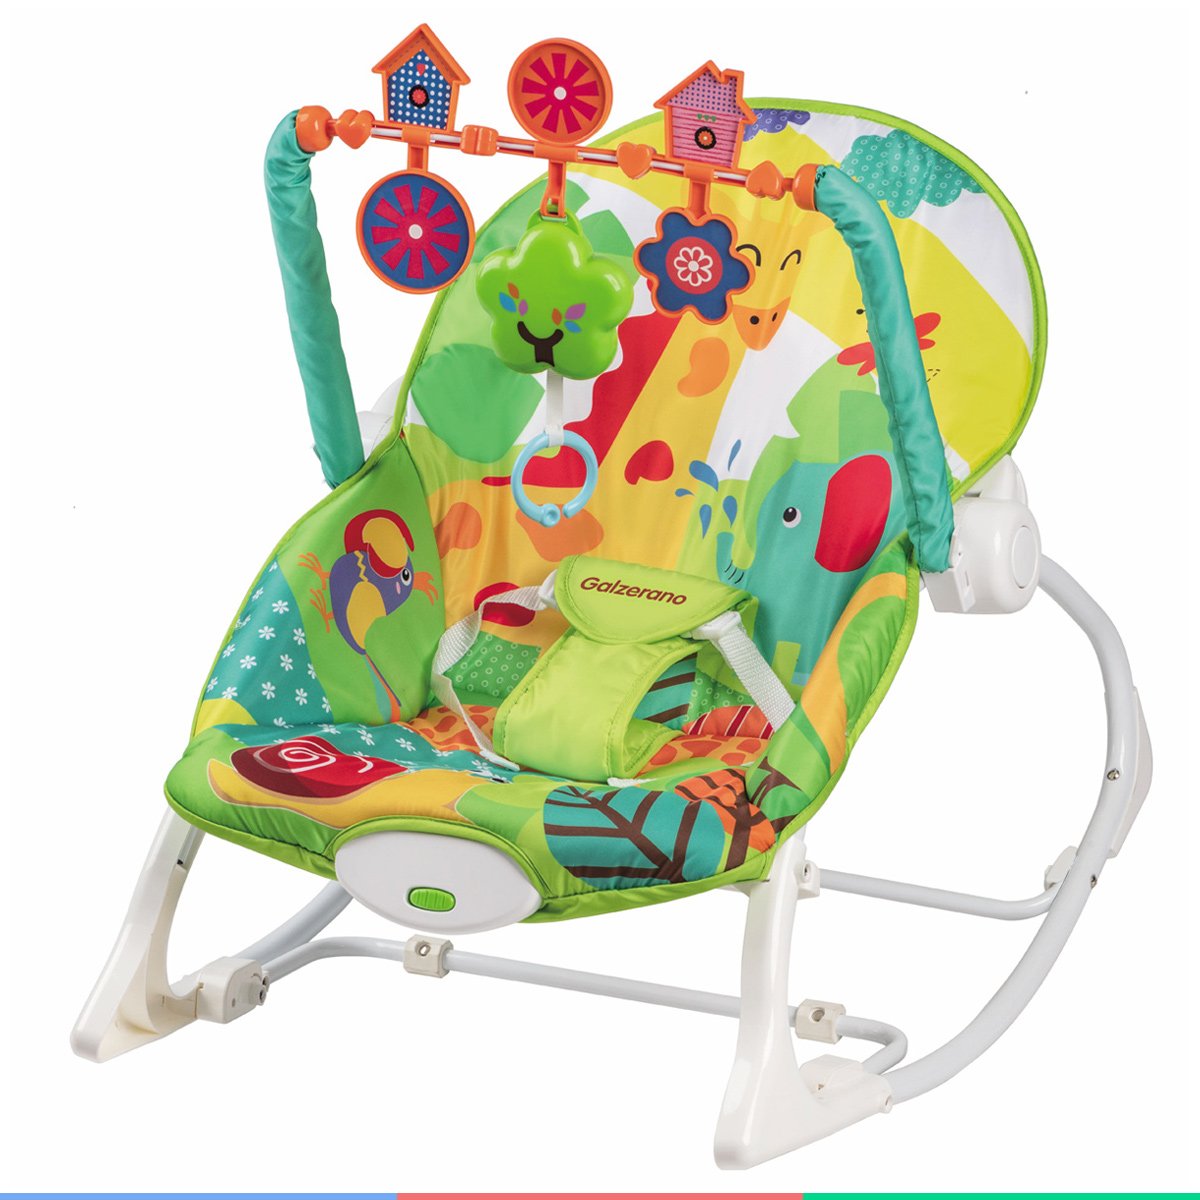 Cadeira de Balanço Com Móbile Infantil Descanso Do Bebê De 0 à 18 Kg Nina Colorida Galzerano - 7